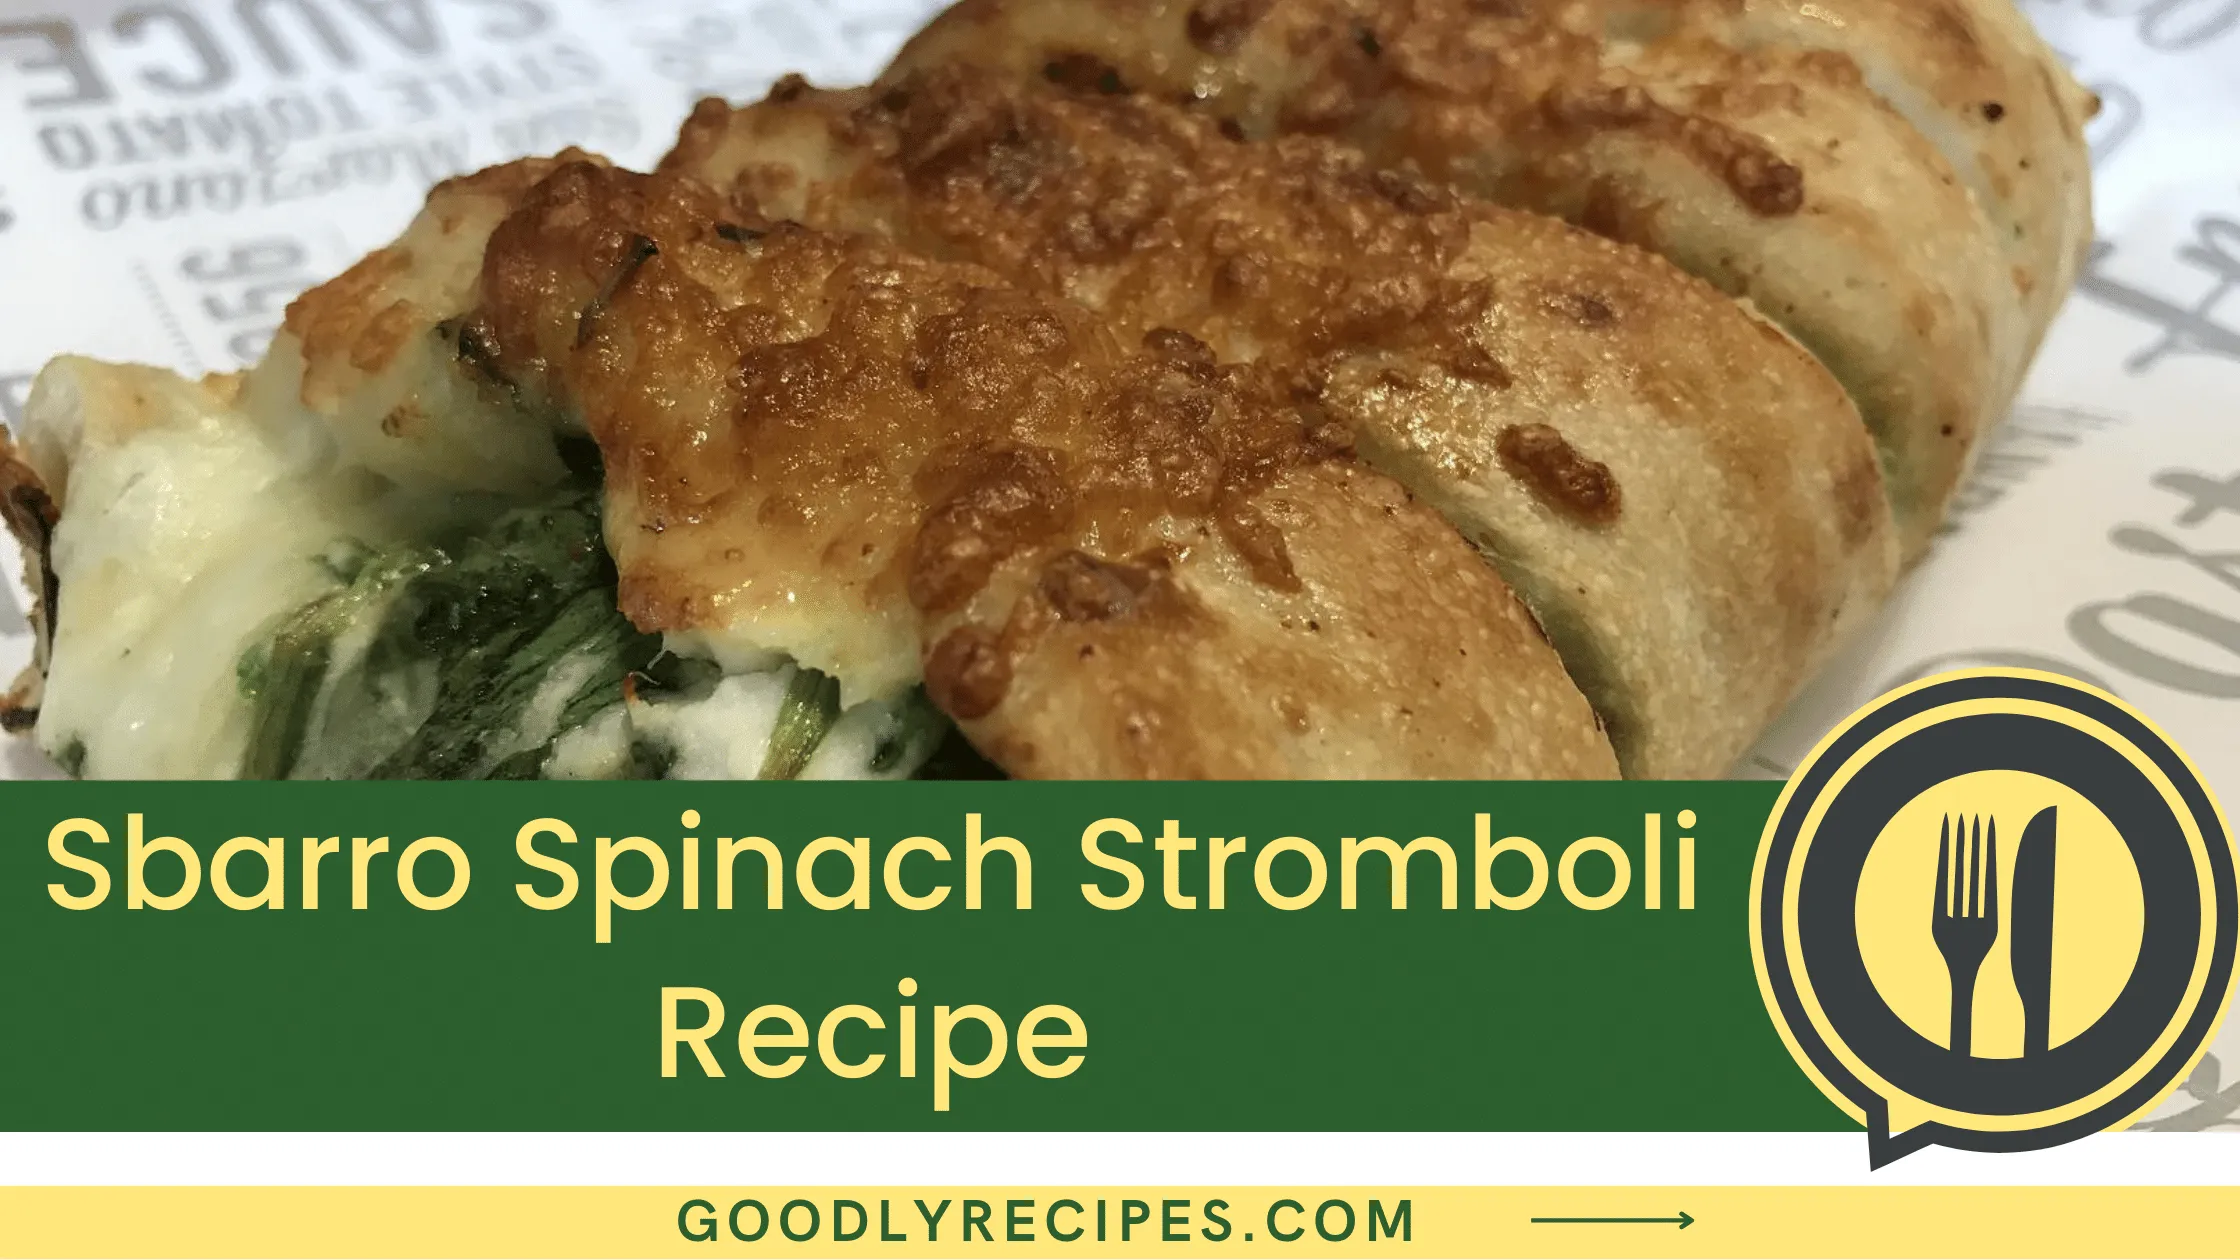 Sbarro Spinach Stromboli Recipe